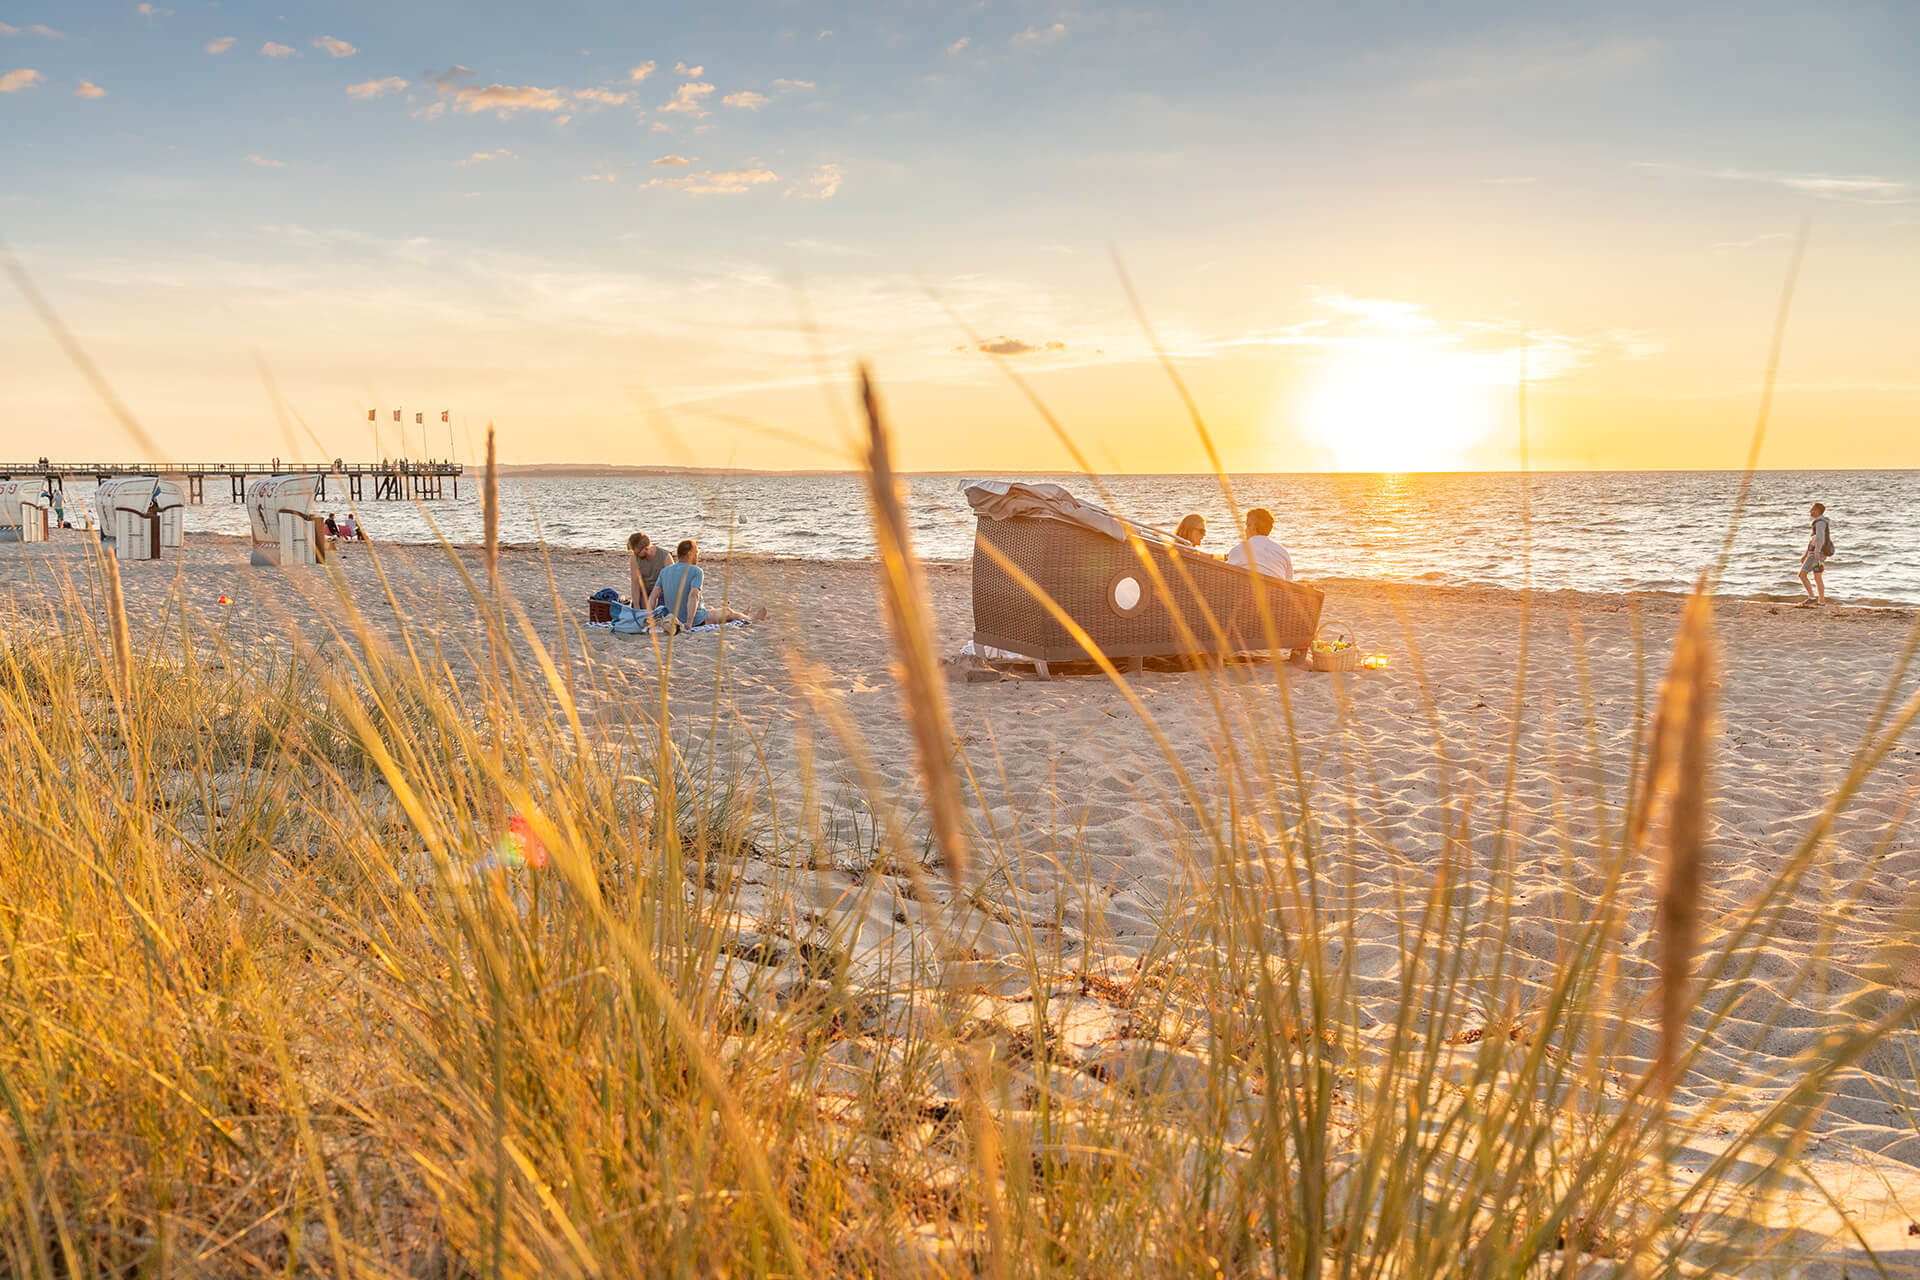 Weissenhäuser Strand Urlaub an der Ostsee: Übernachten am Strand im Schlafstrandkorb